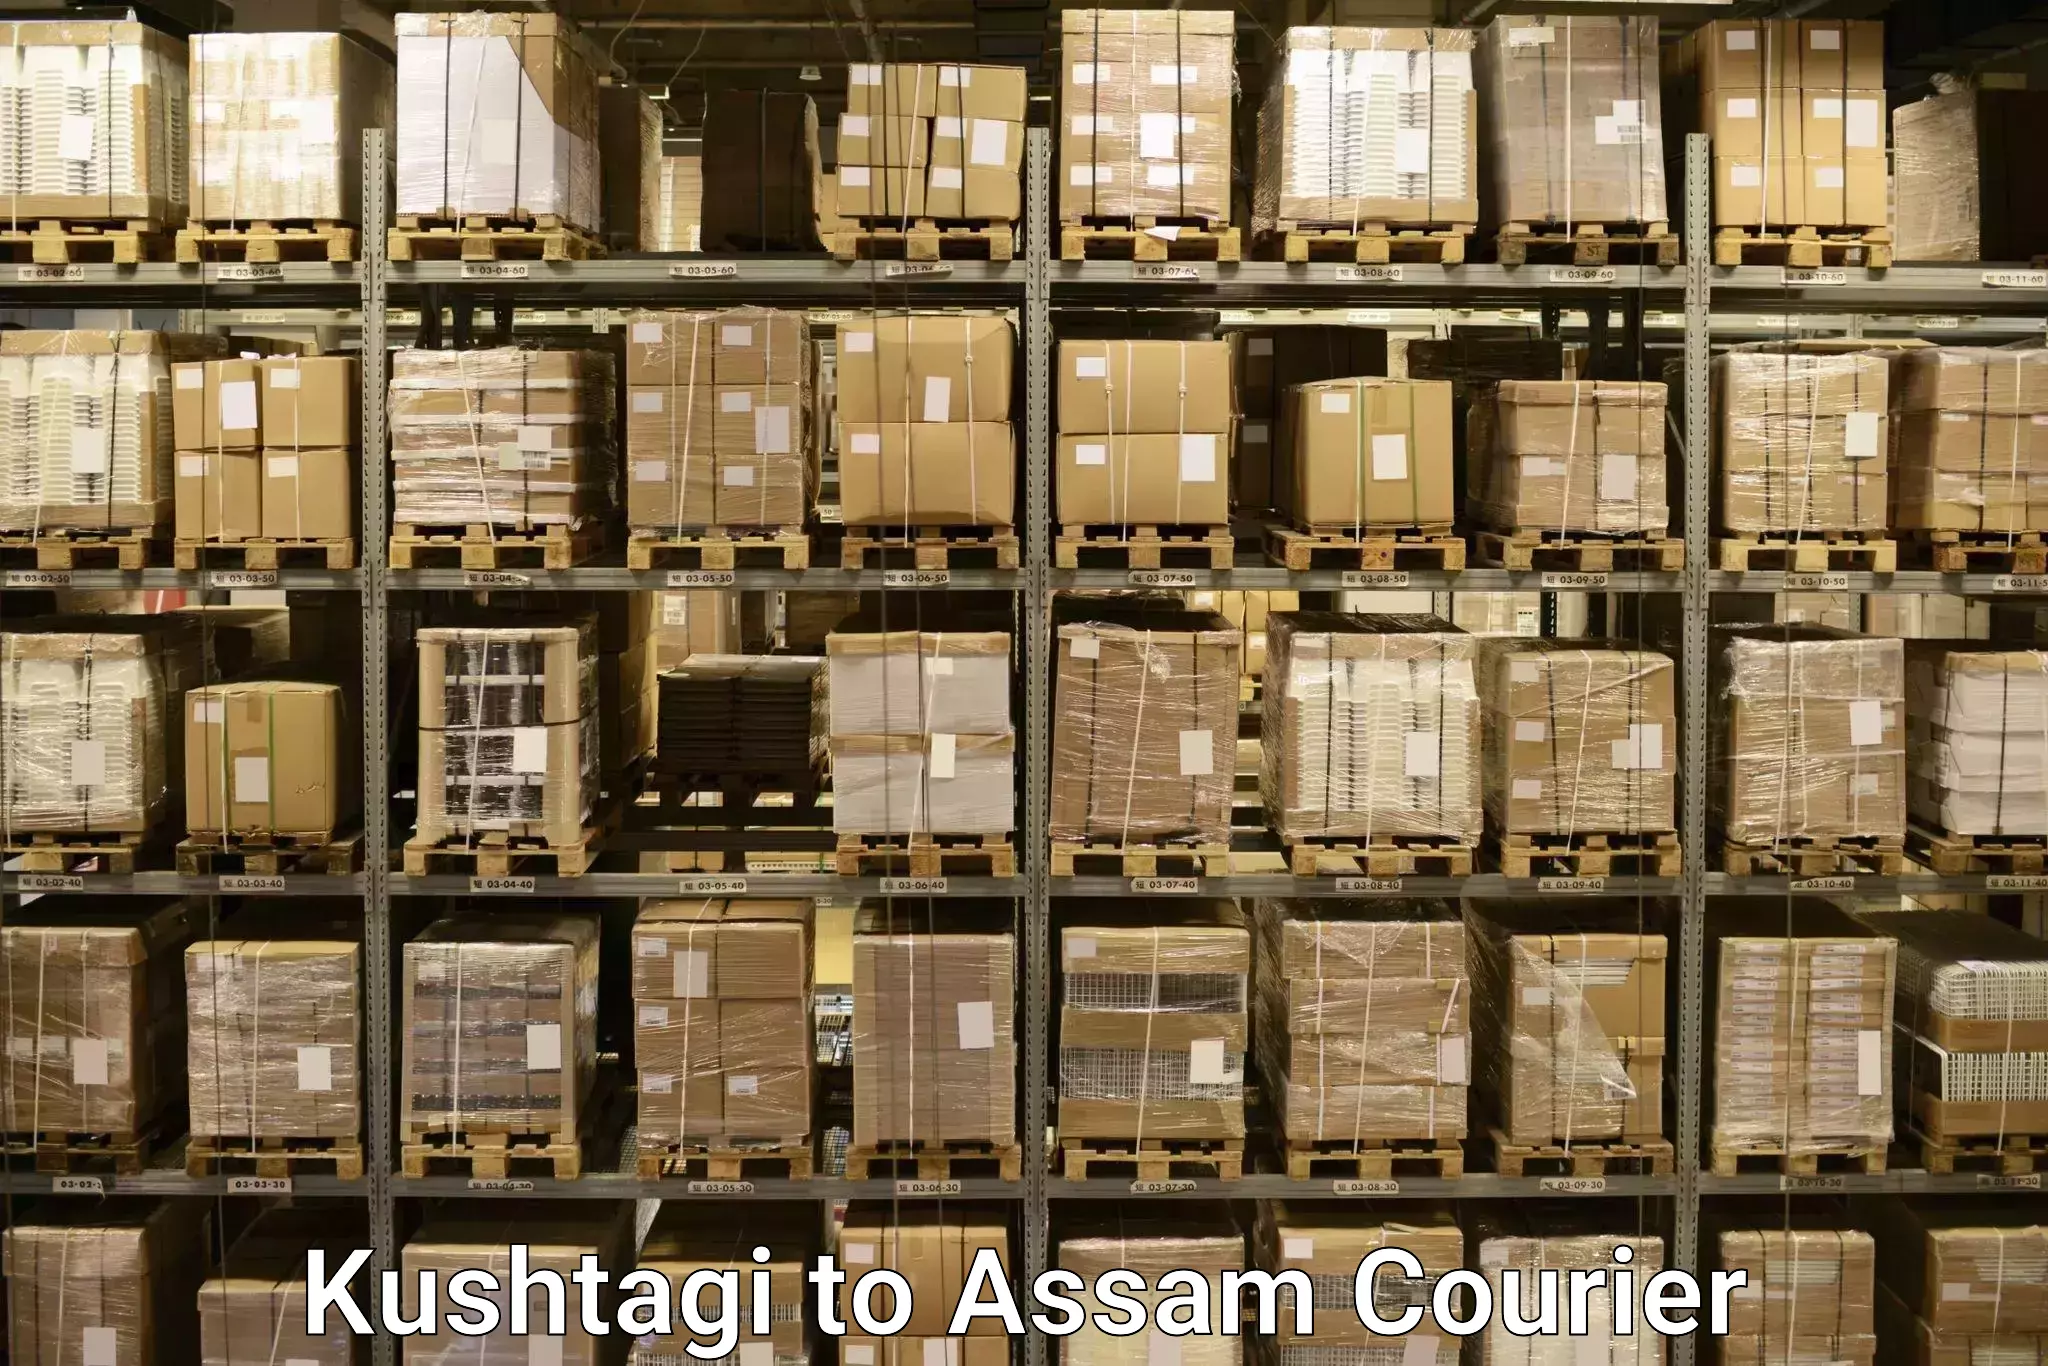 Luggage shipping estimate Kushtagi to Jonai